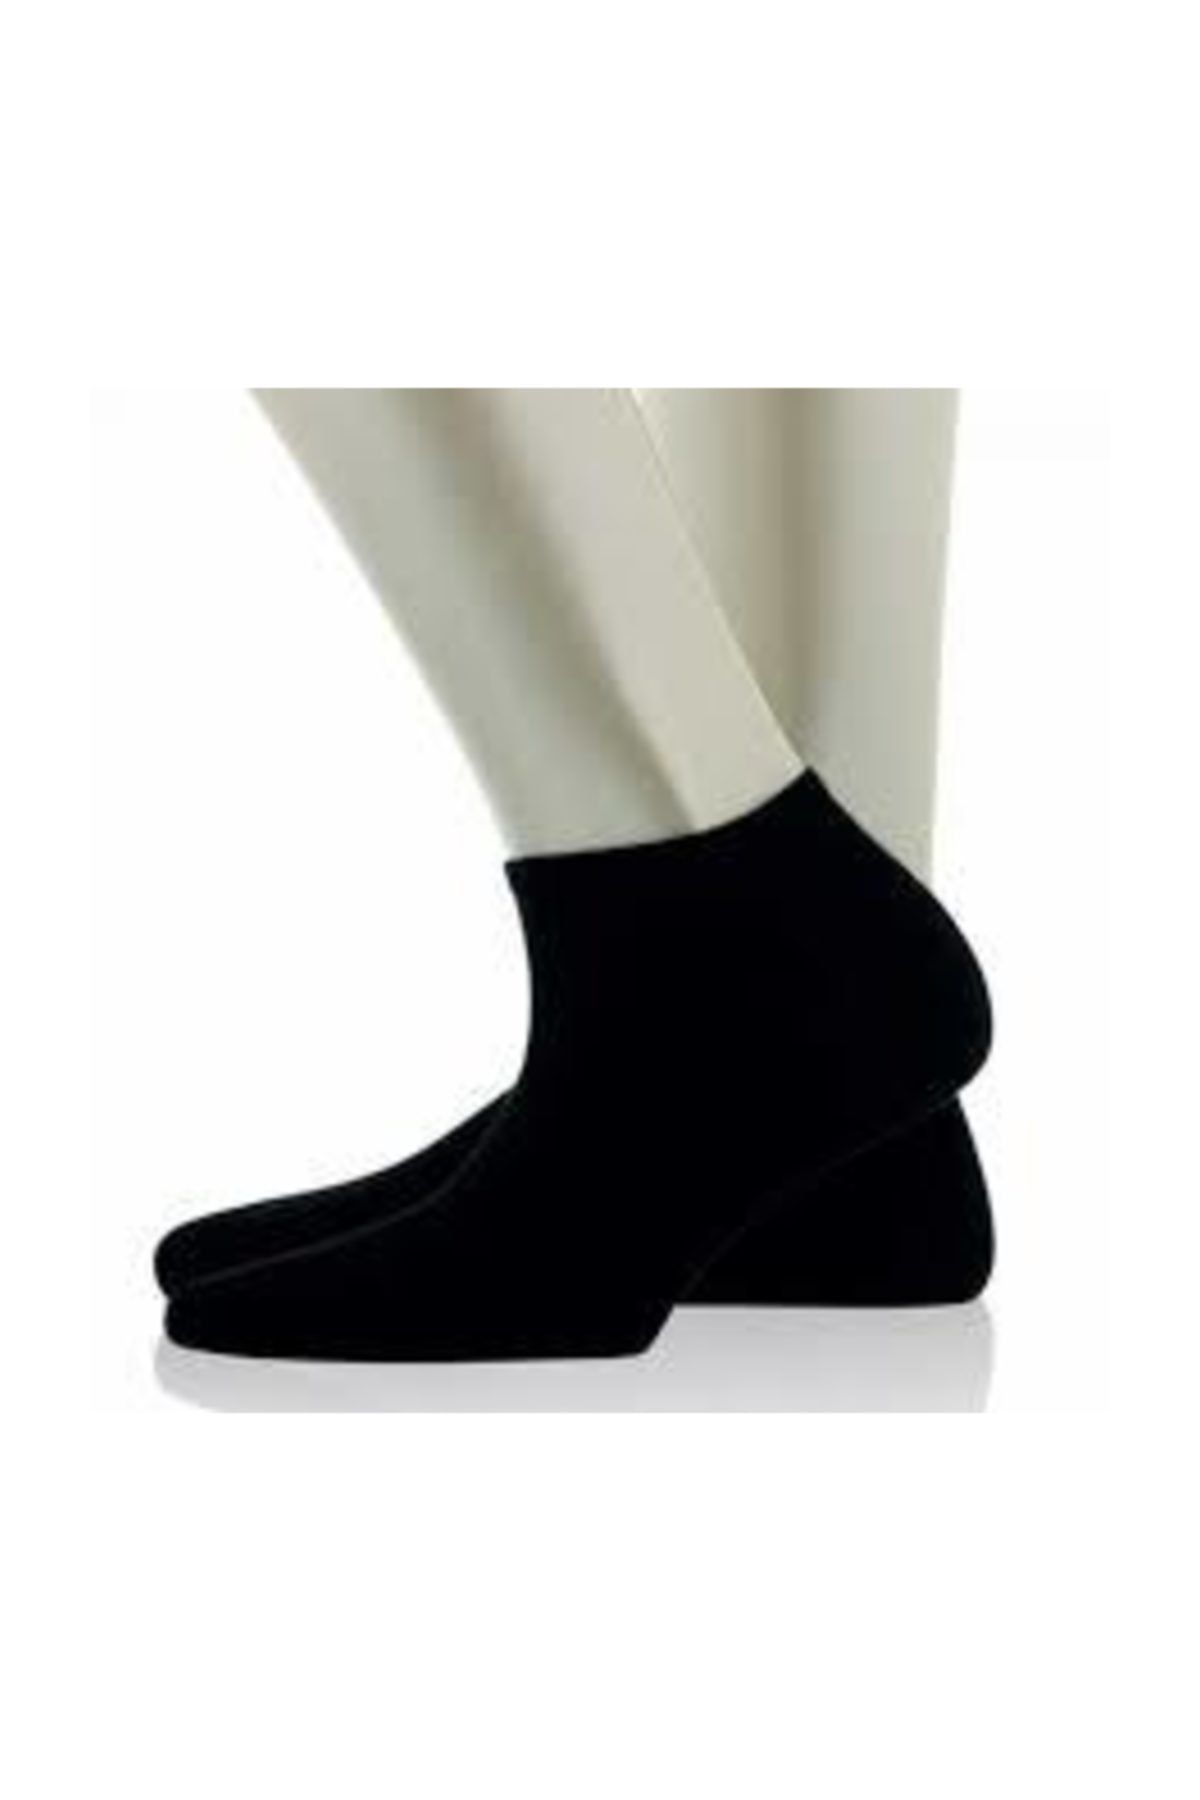 salarticaret 6 Çift Erkek Siyah Patik Çorap  Erkek Düz Renk Siyah Kısa Çorap Yazlık Çorap